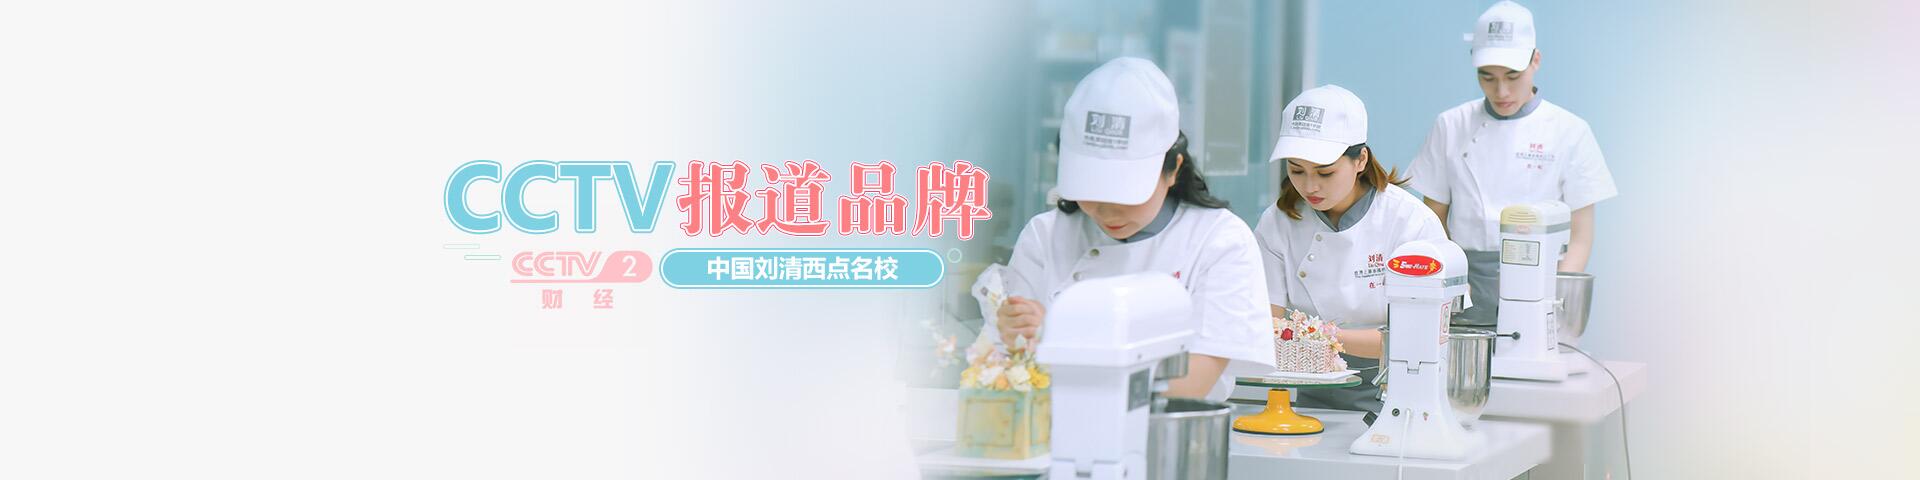 广州刘清西点蛋糕培训学校